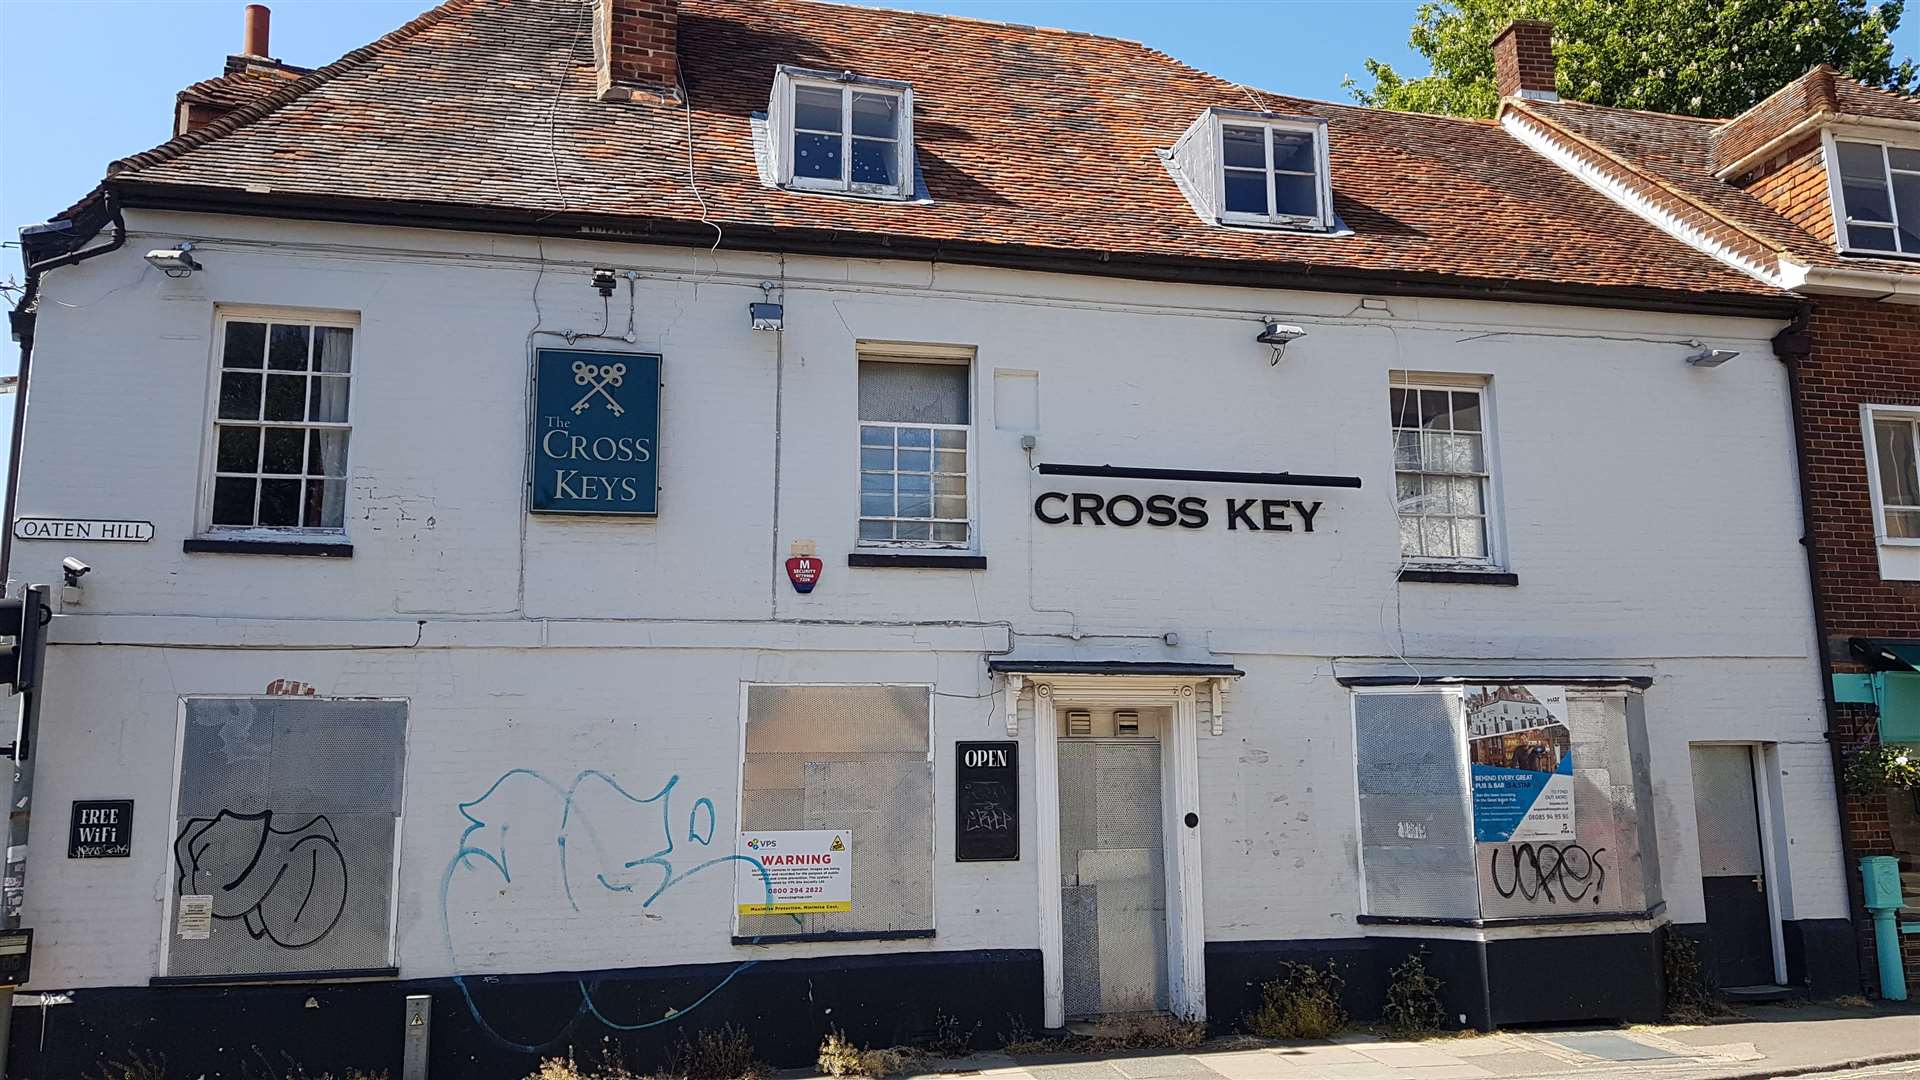 The Cross Keys in Oaten Hill, Canterbury, is still boarded up